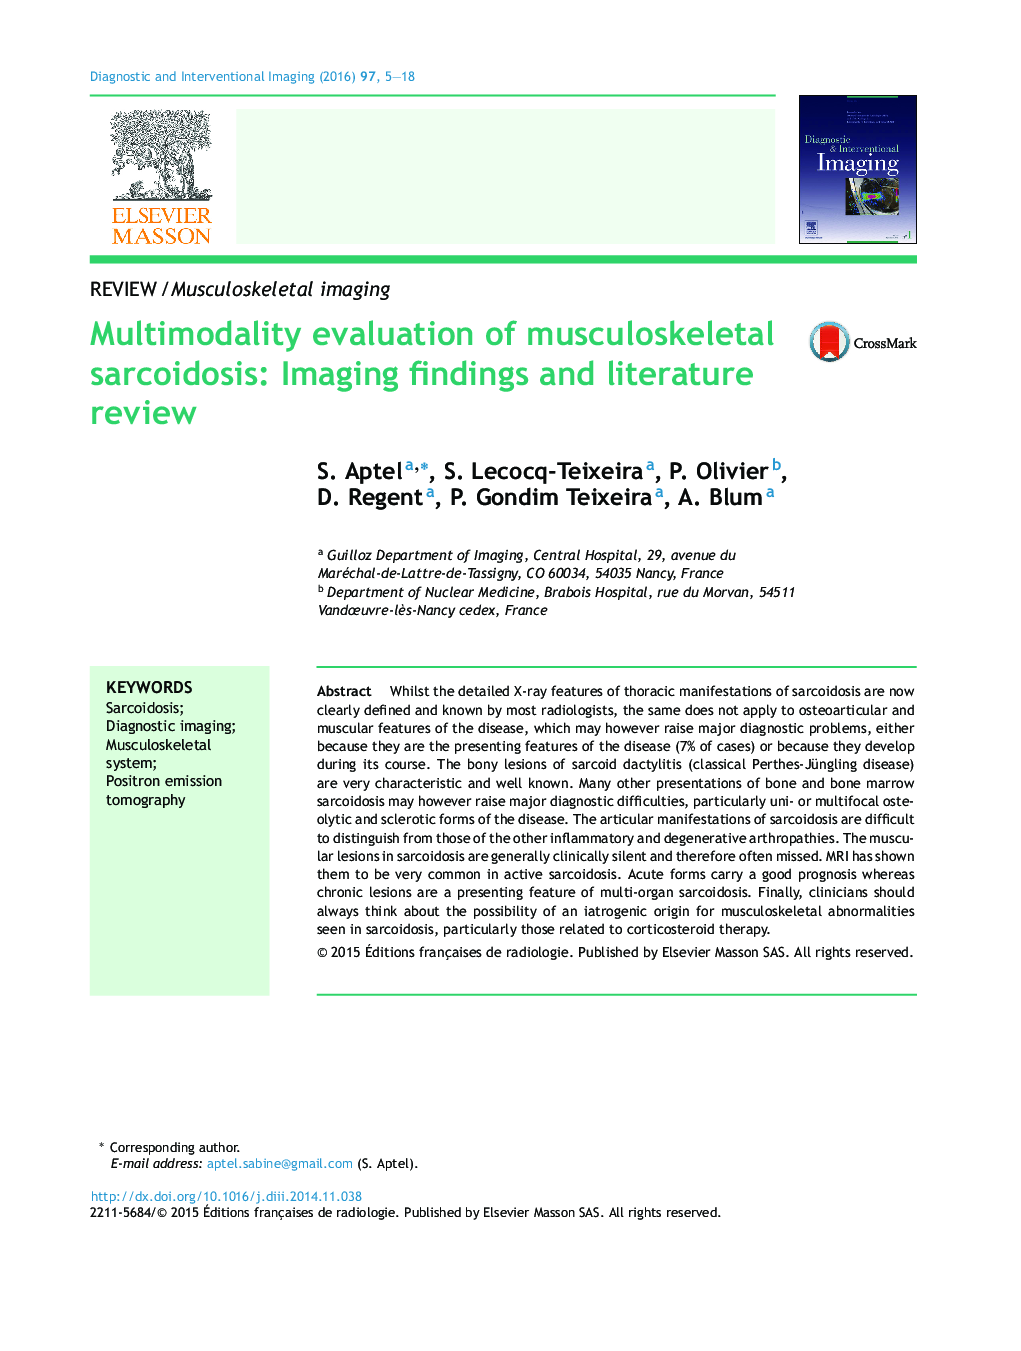 ارزیابی چندروشی از سارکوئیدوز عضلانی اسکلتی: یافته های عکسبرداری و بررسی مقالات